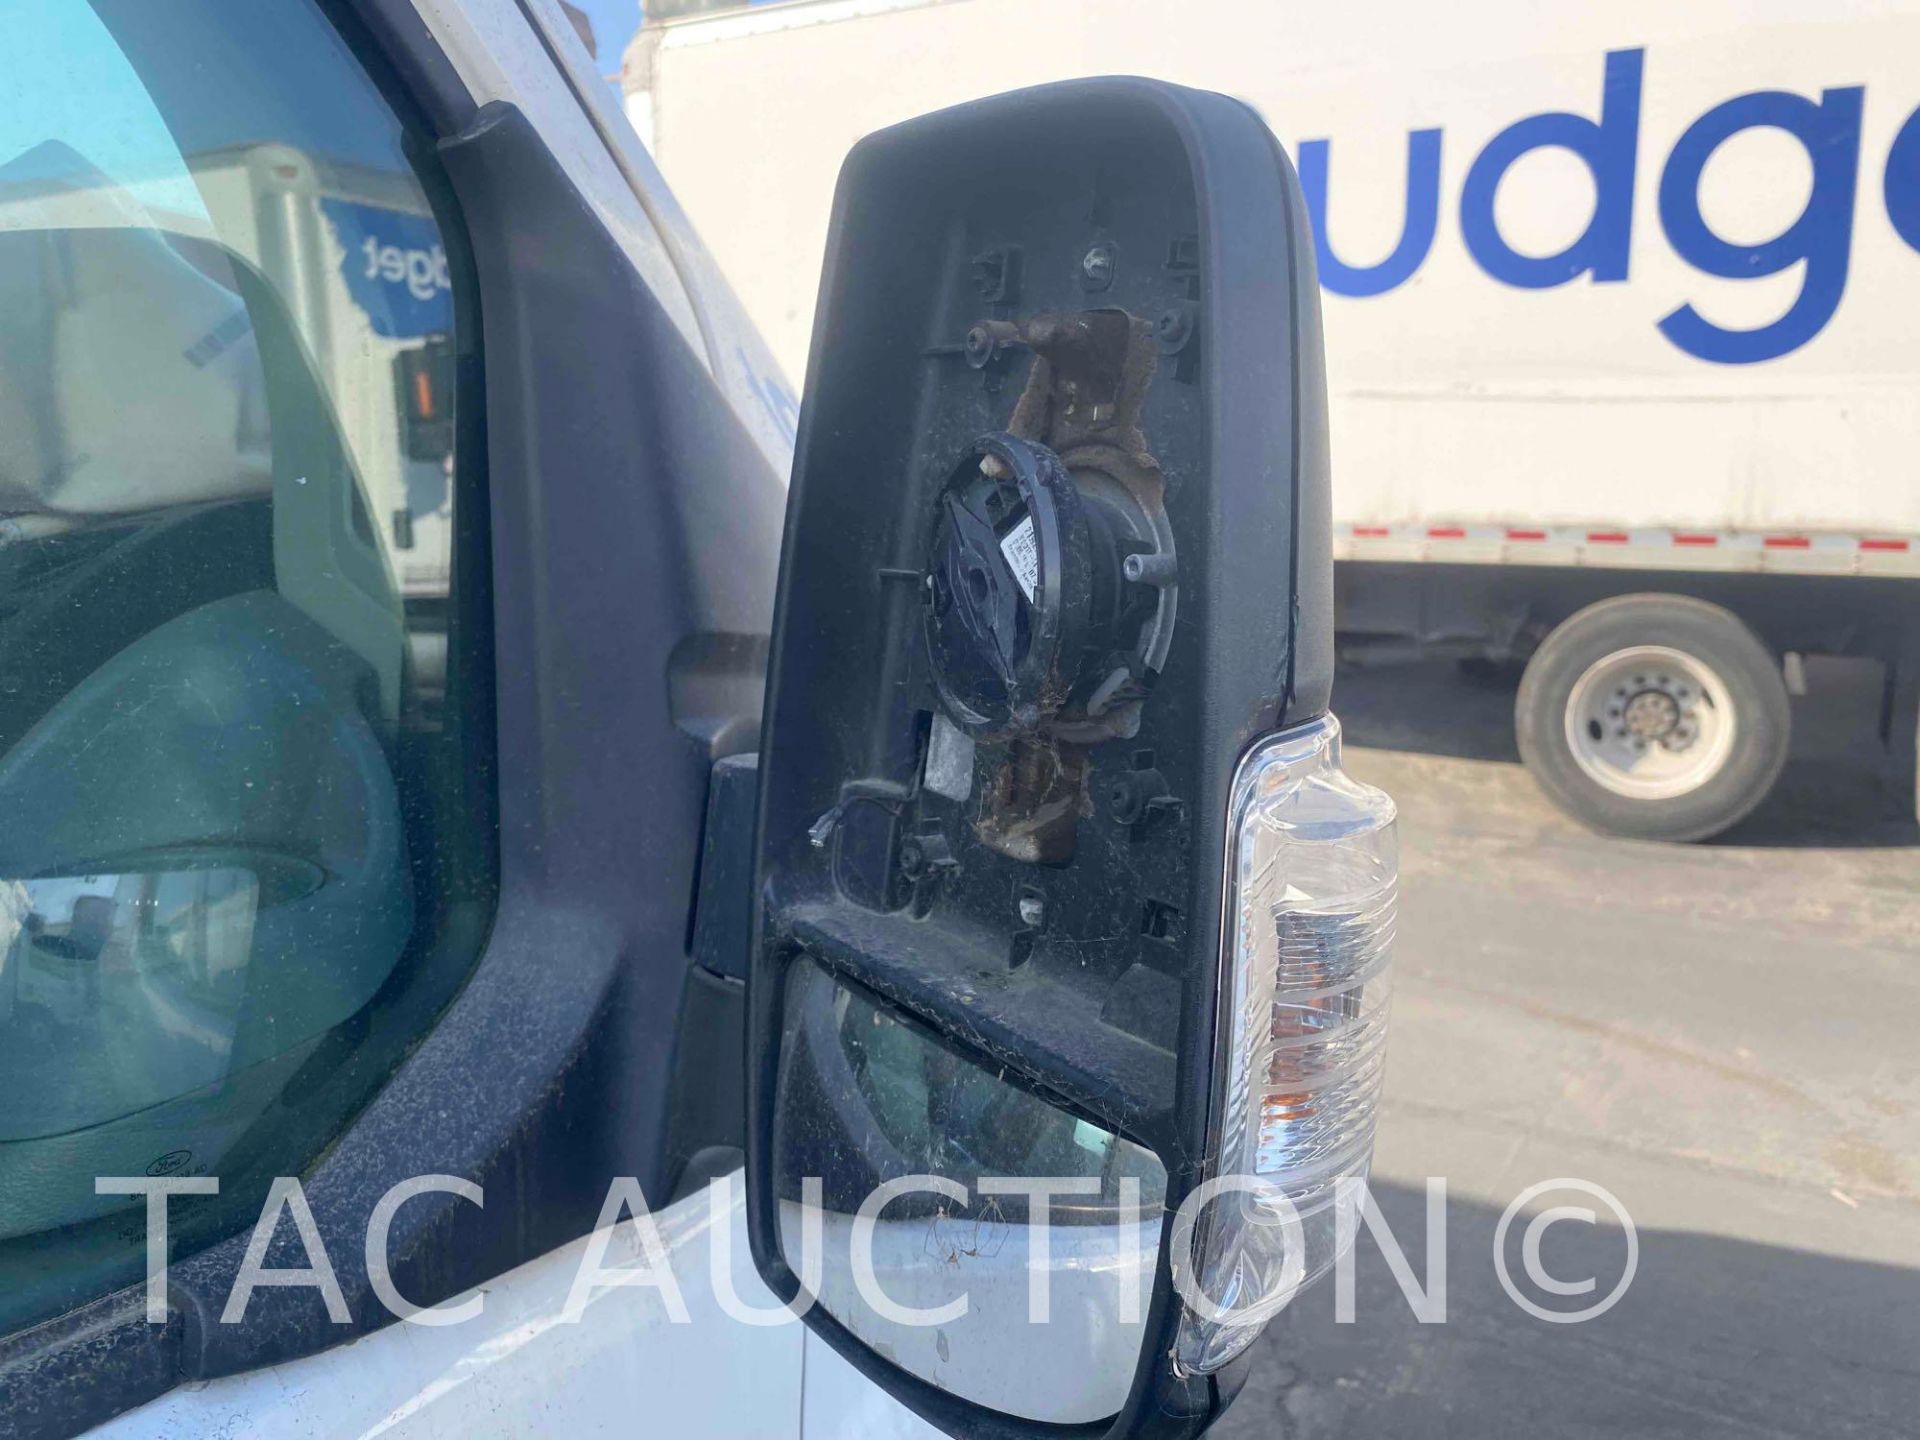 2019 Ford Transit 150 Cargo Van - Image 10 of 42